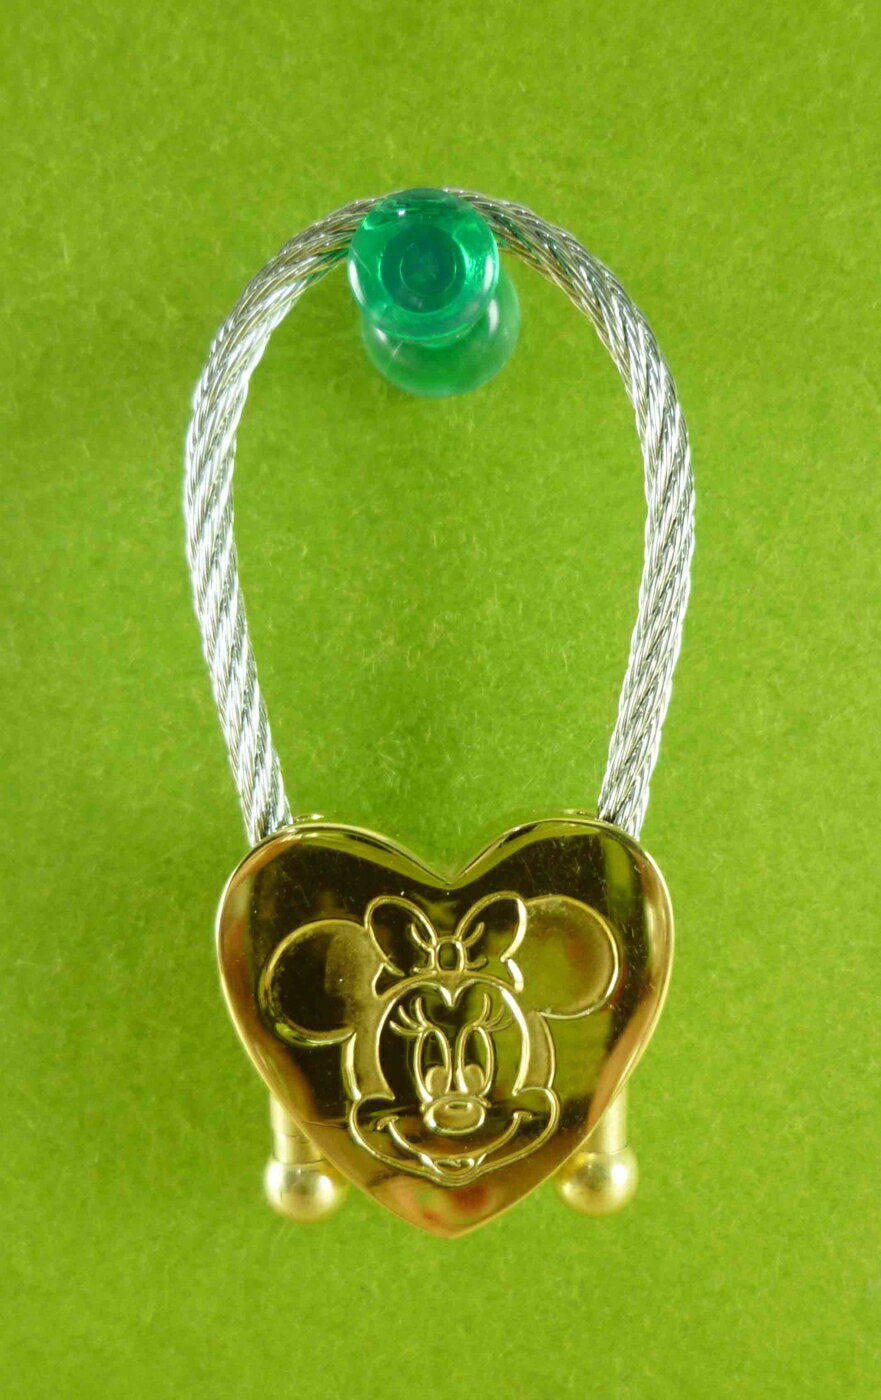 【震撼精品百貨】Micky Mouse 米奇/米妮 鋼線鎖圈-米妮 震撼日式精品百貨